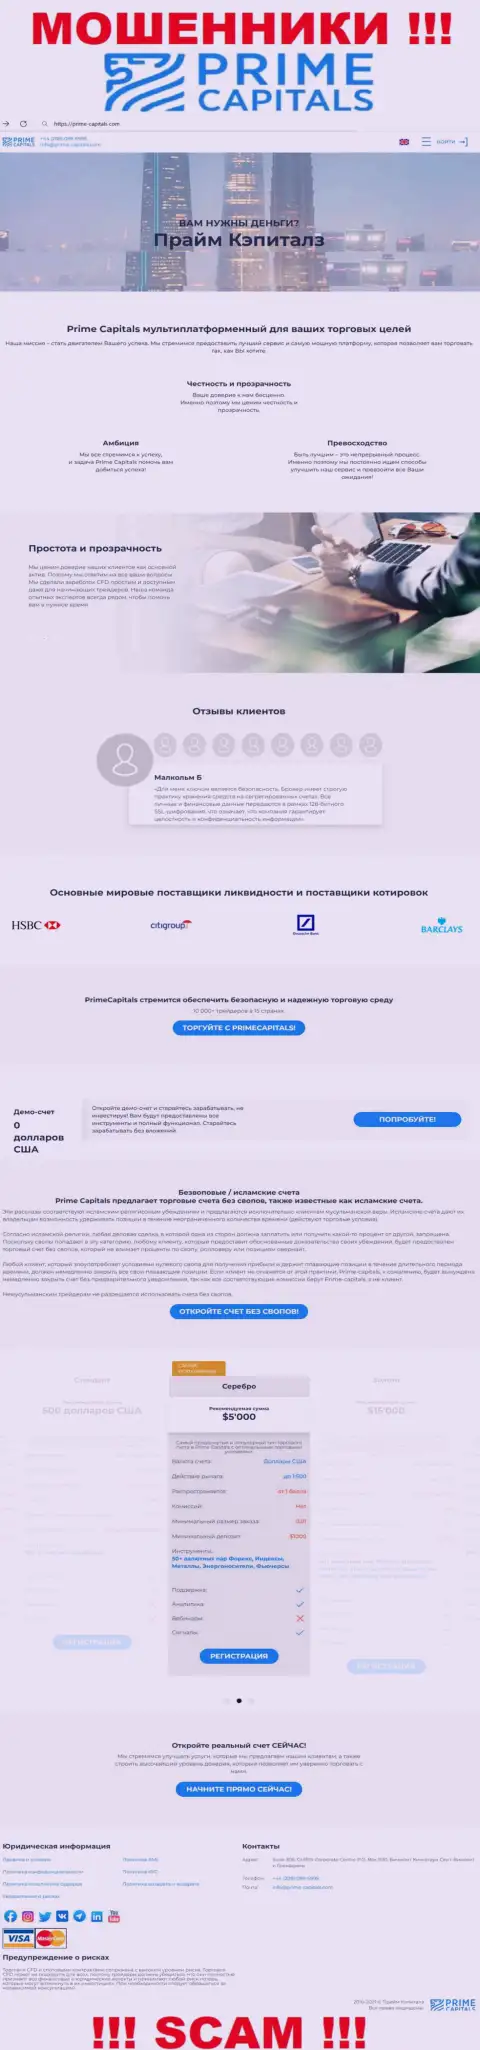 Официальный сайт мошенников Прайм Капиталз